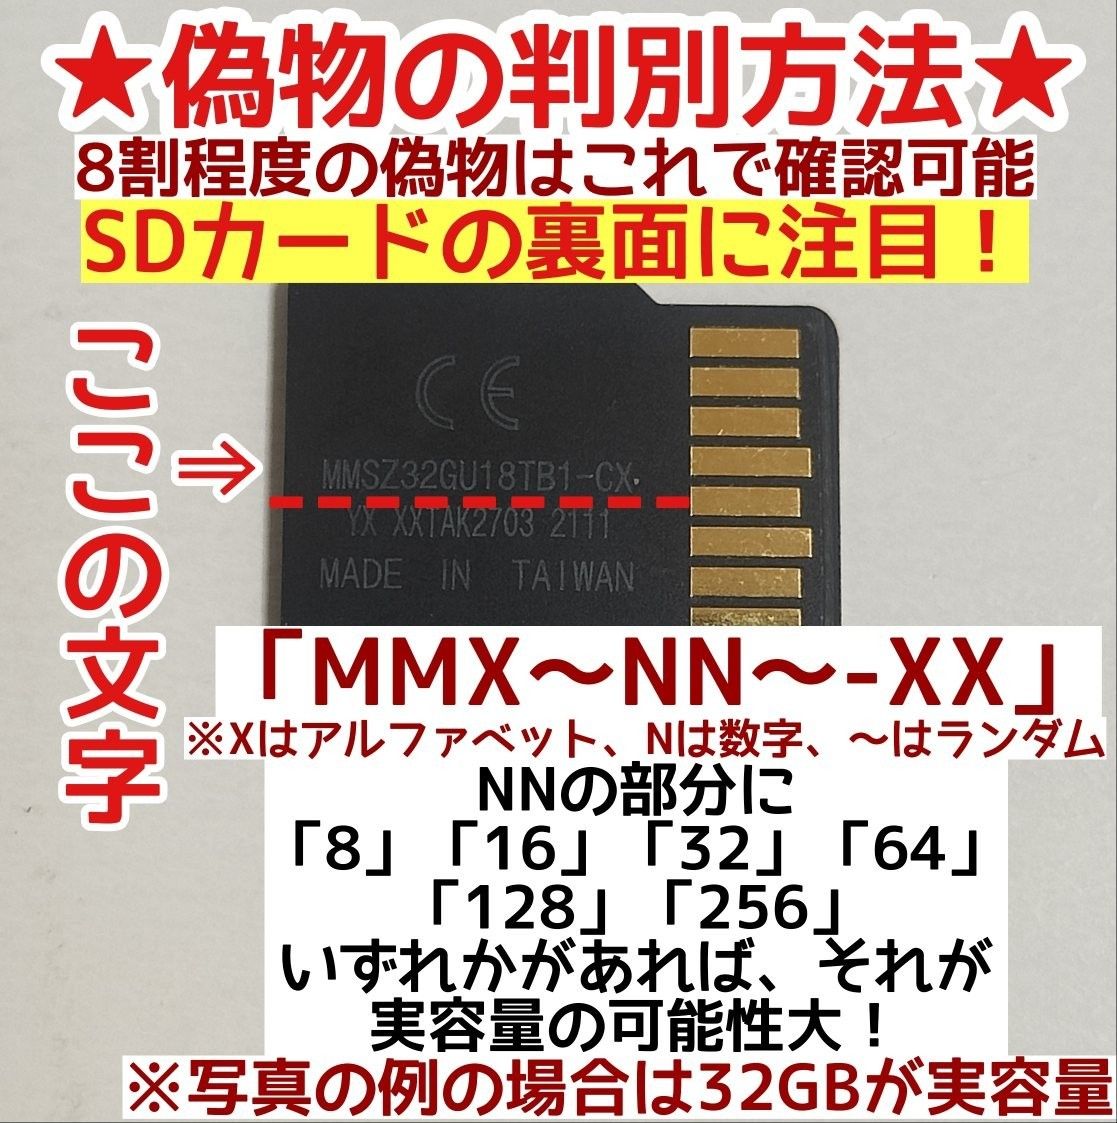 microsd マイクロSD カード 256GB 1枚★Sandisk正規品★